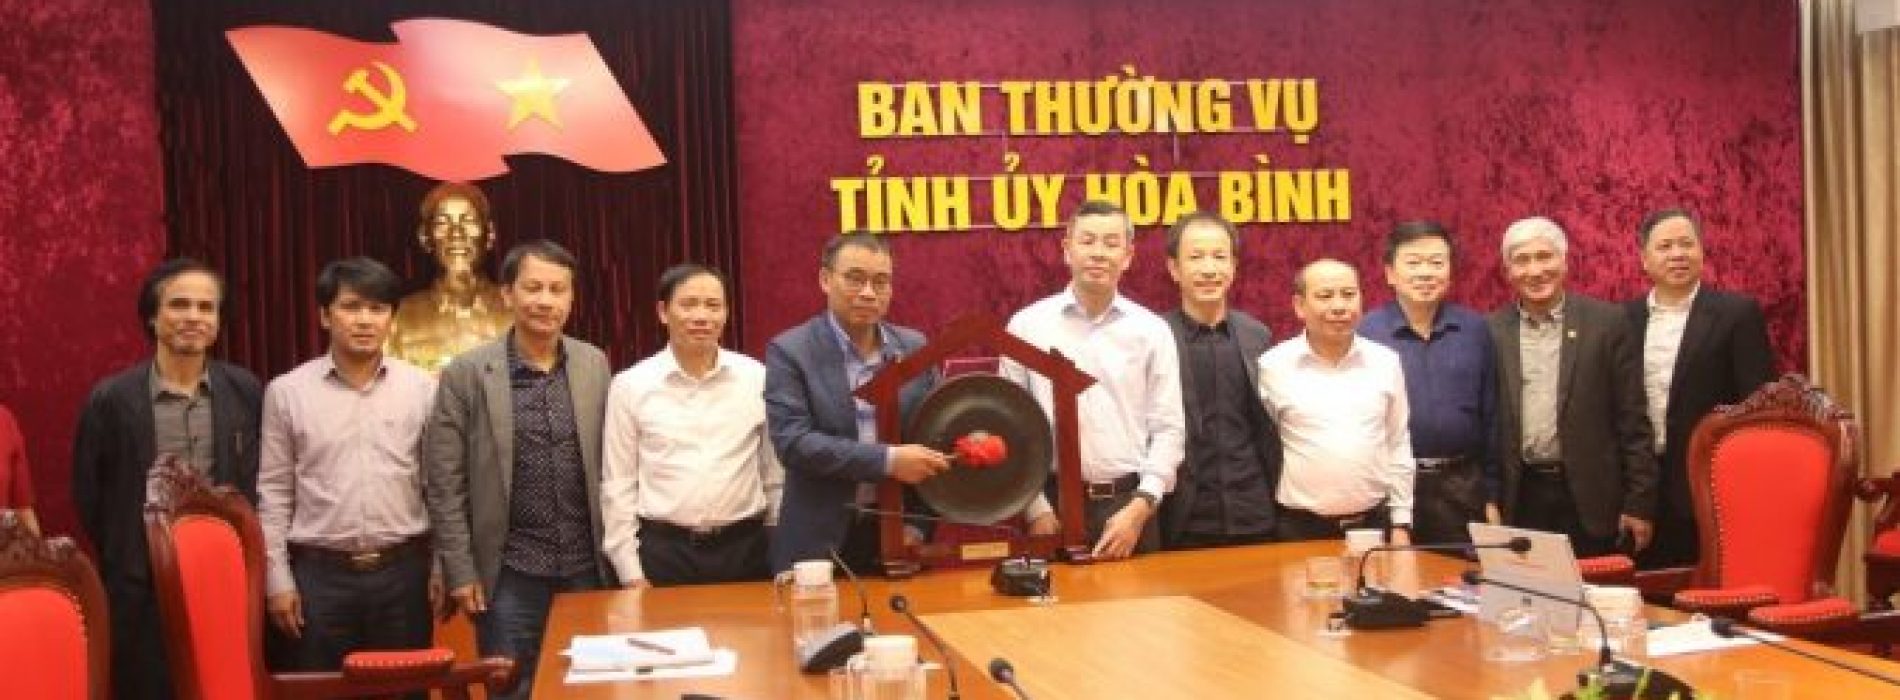 Chủ tịch Hội Kiến trúc sư Việt Nam làm việc tại tỉnh Hòa Bình